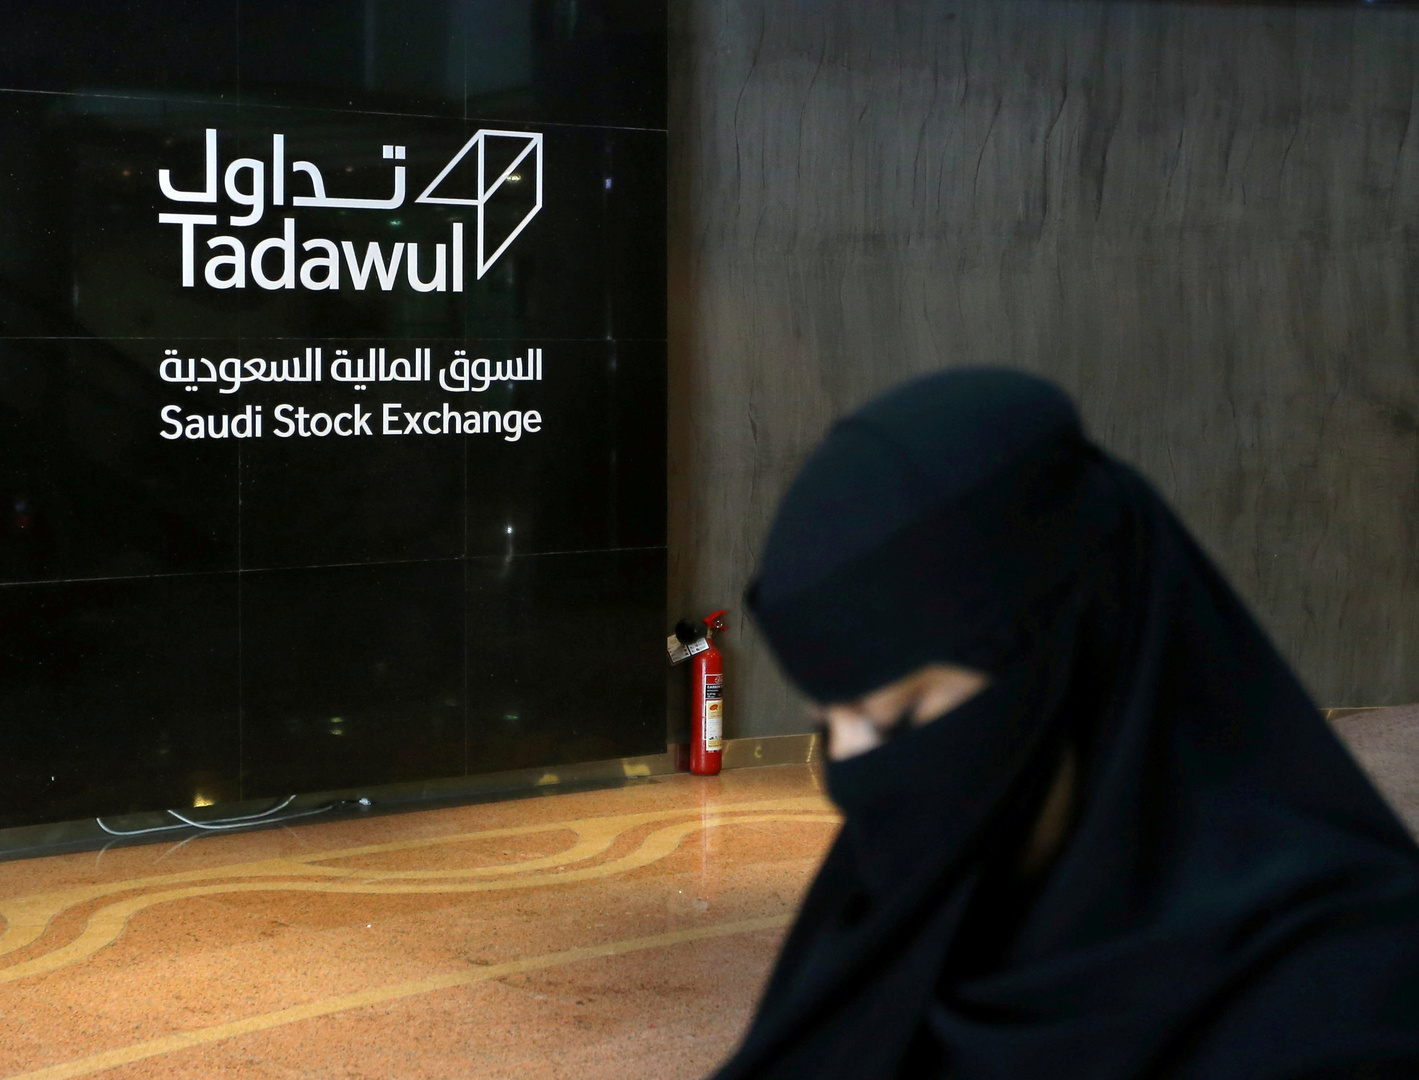 عودة البورصة السعودية إلى العمل بعد تعطلها بشكل مؤقت